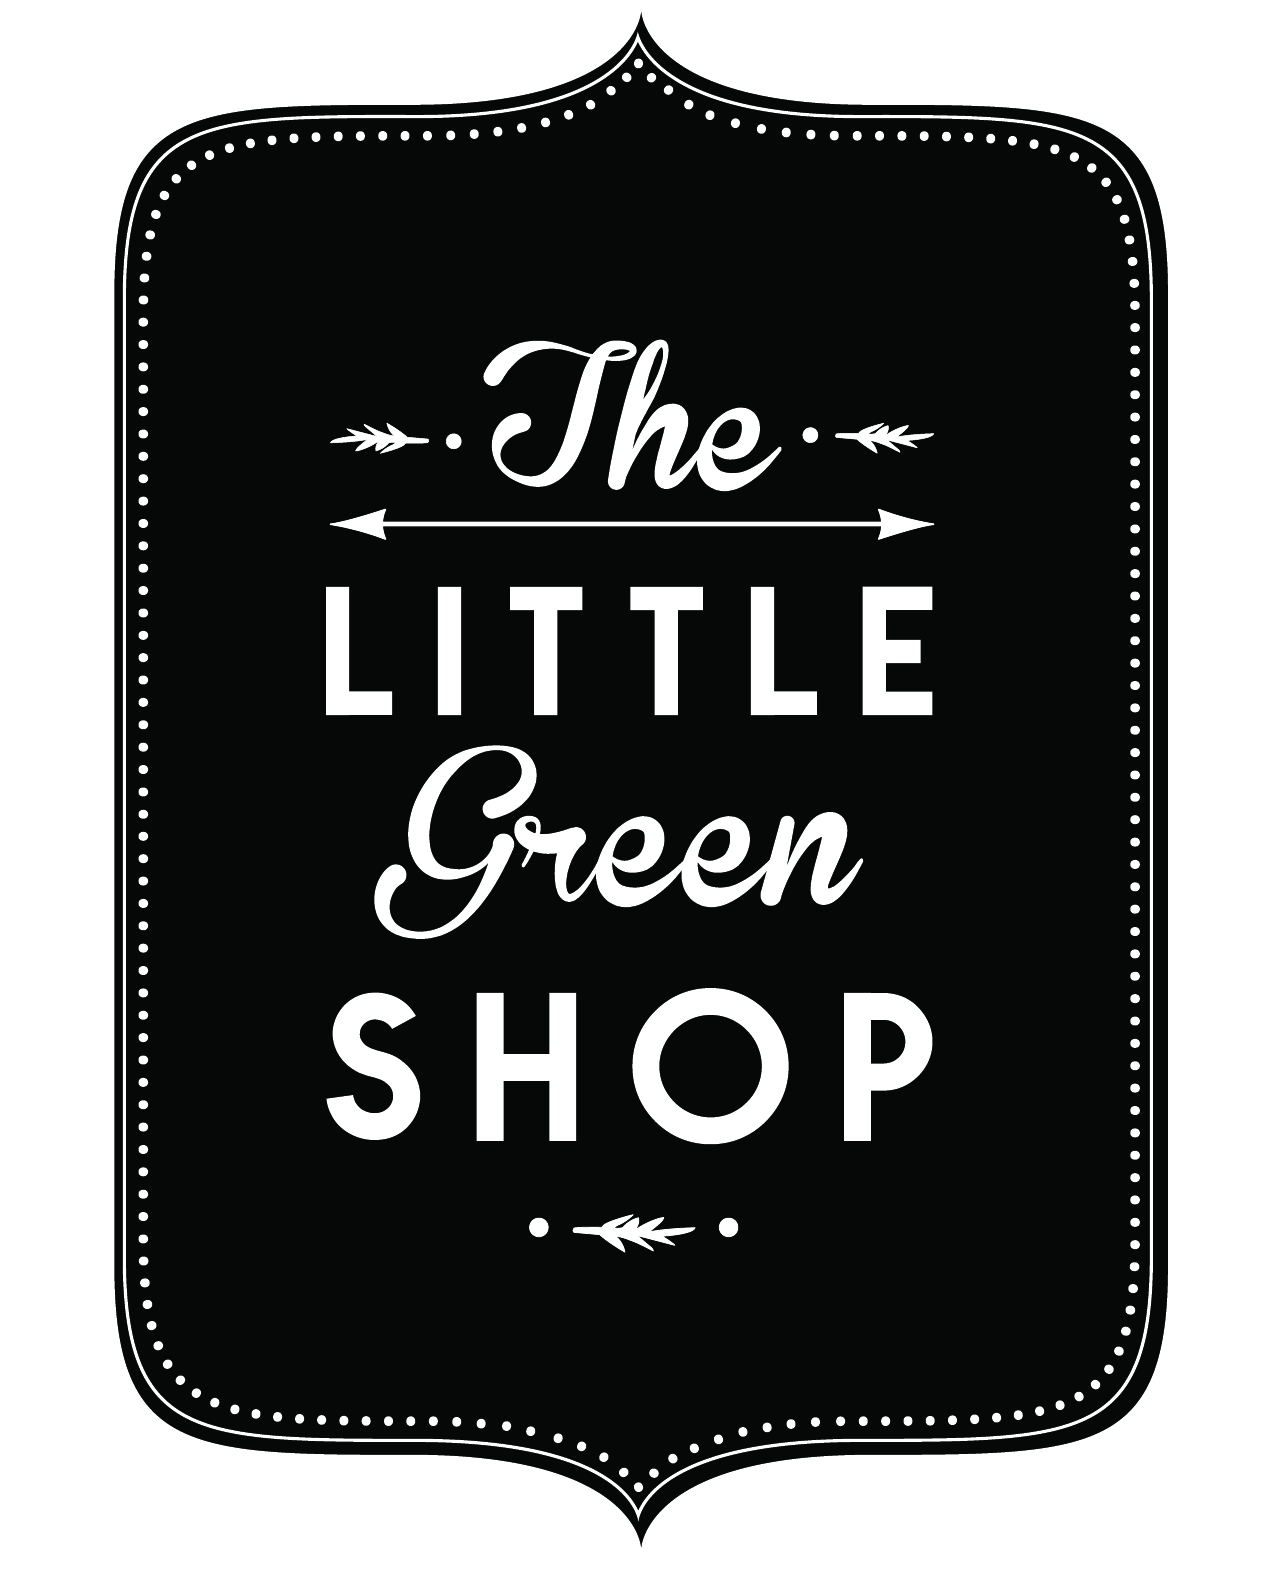 The little green shop